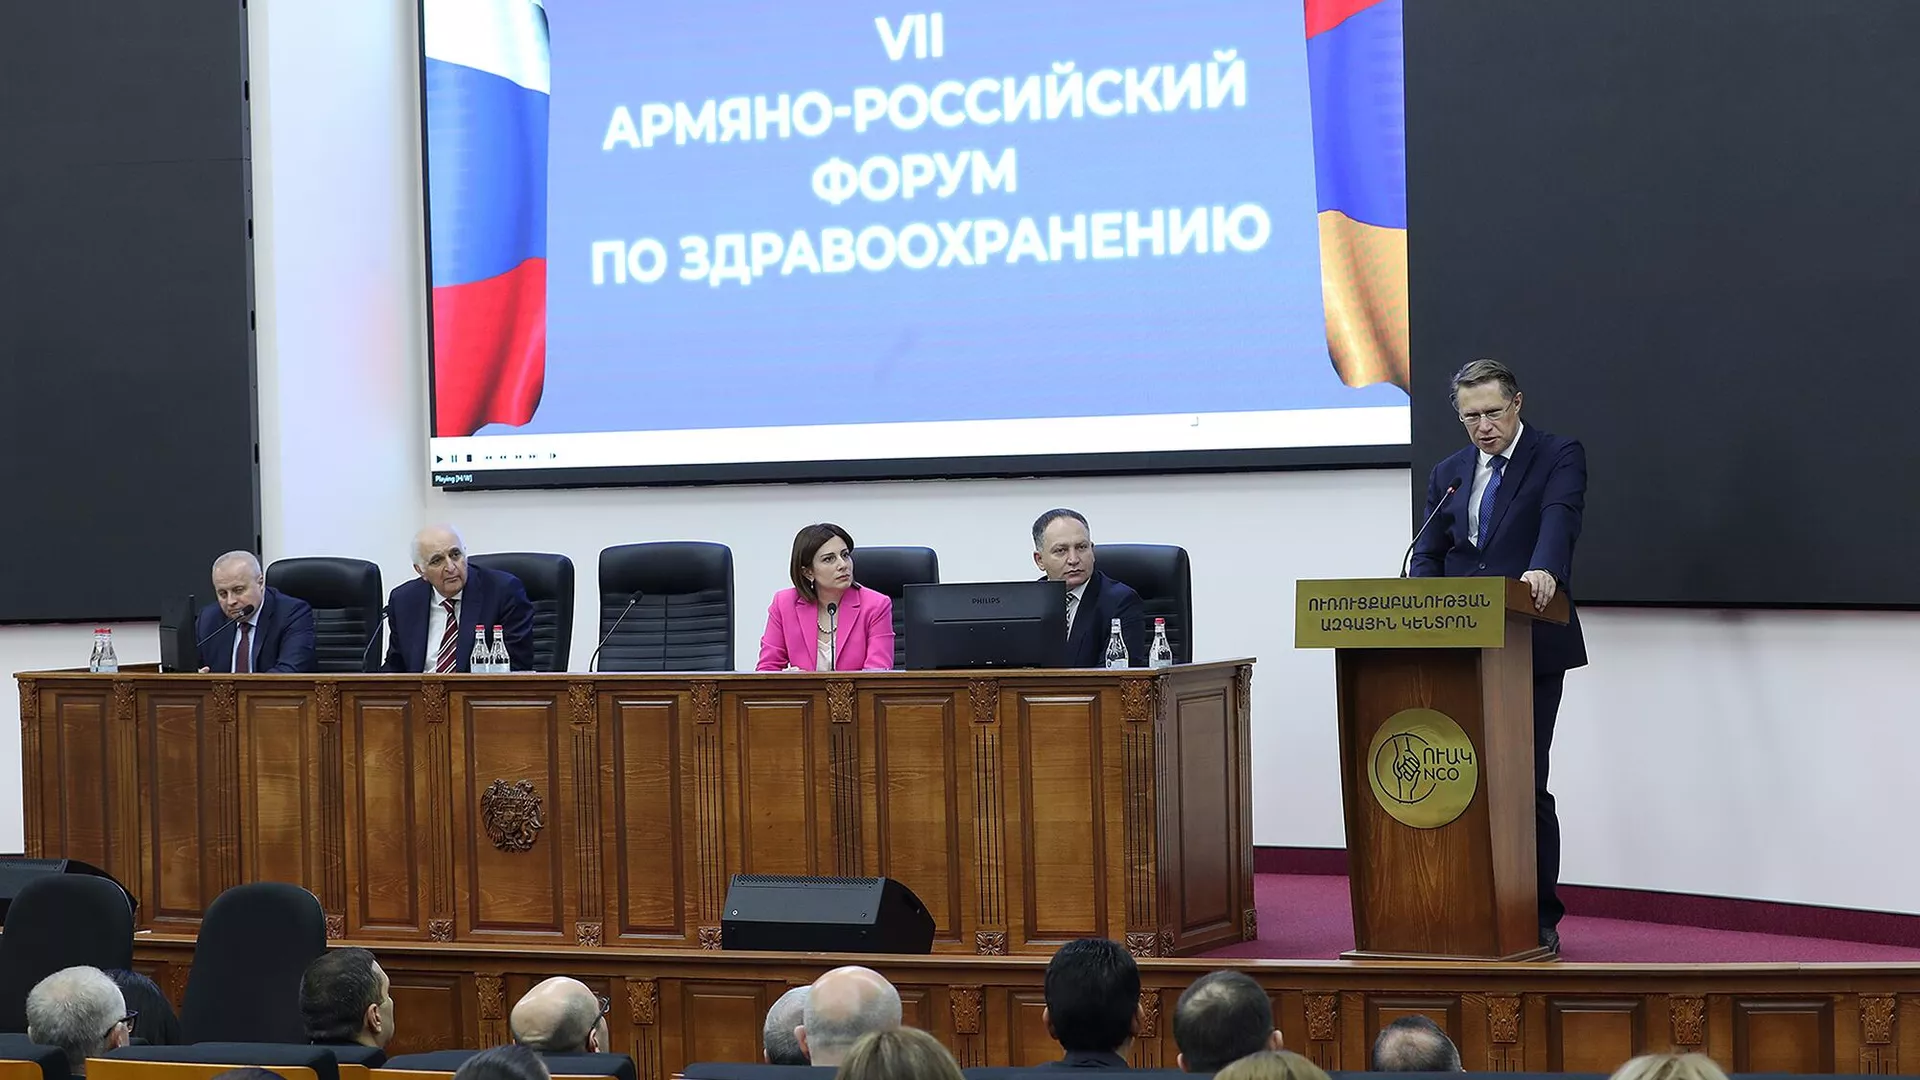 ՌԴ-ն Հայաստանին հայրենական բժշկական պարագաներ է առաջարկում